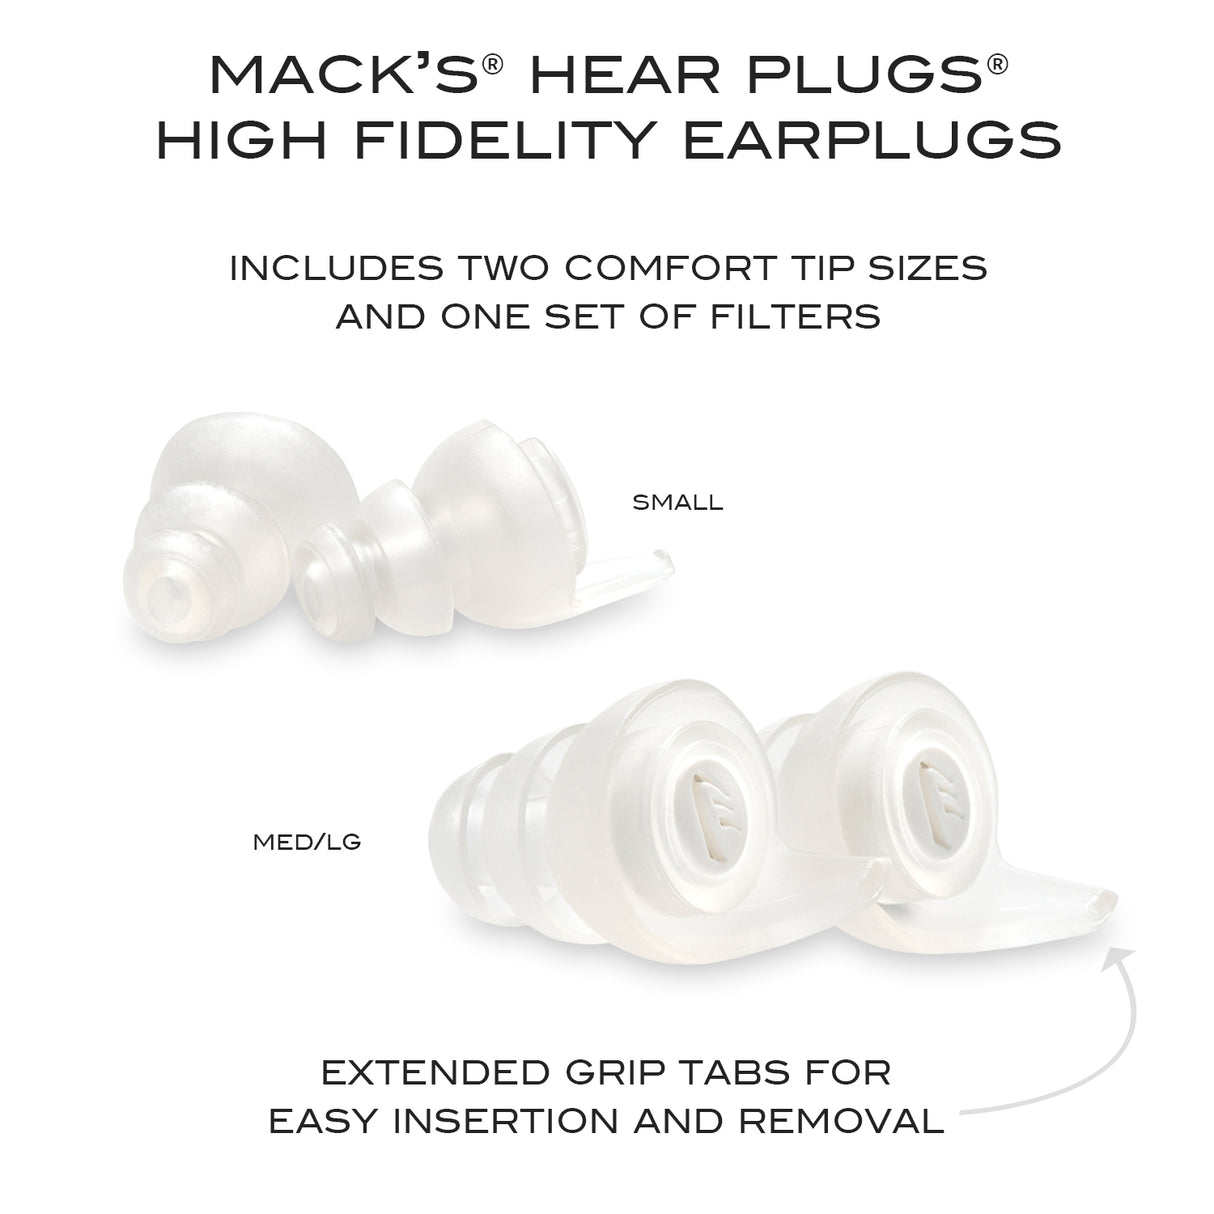 Hear Plugs High Fidelity Ear Plugs Earplugs Mack's   